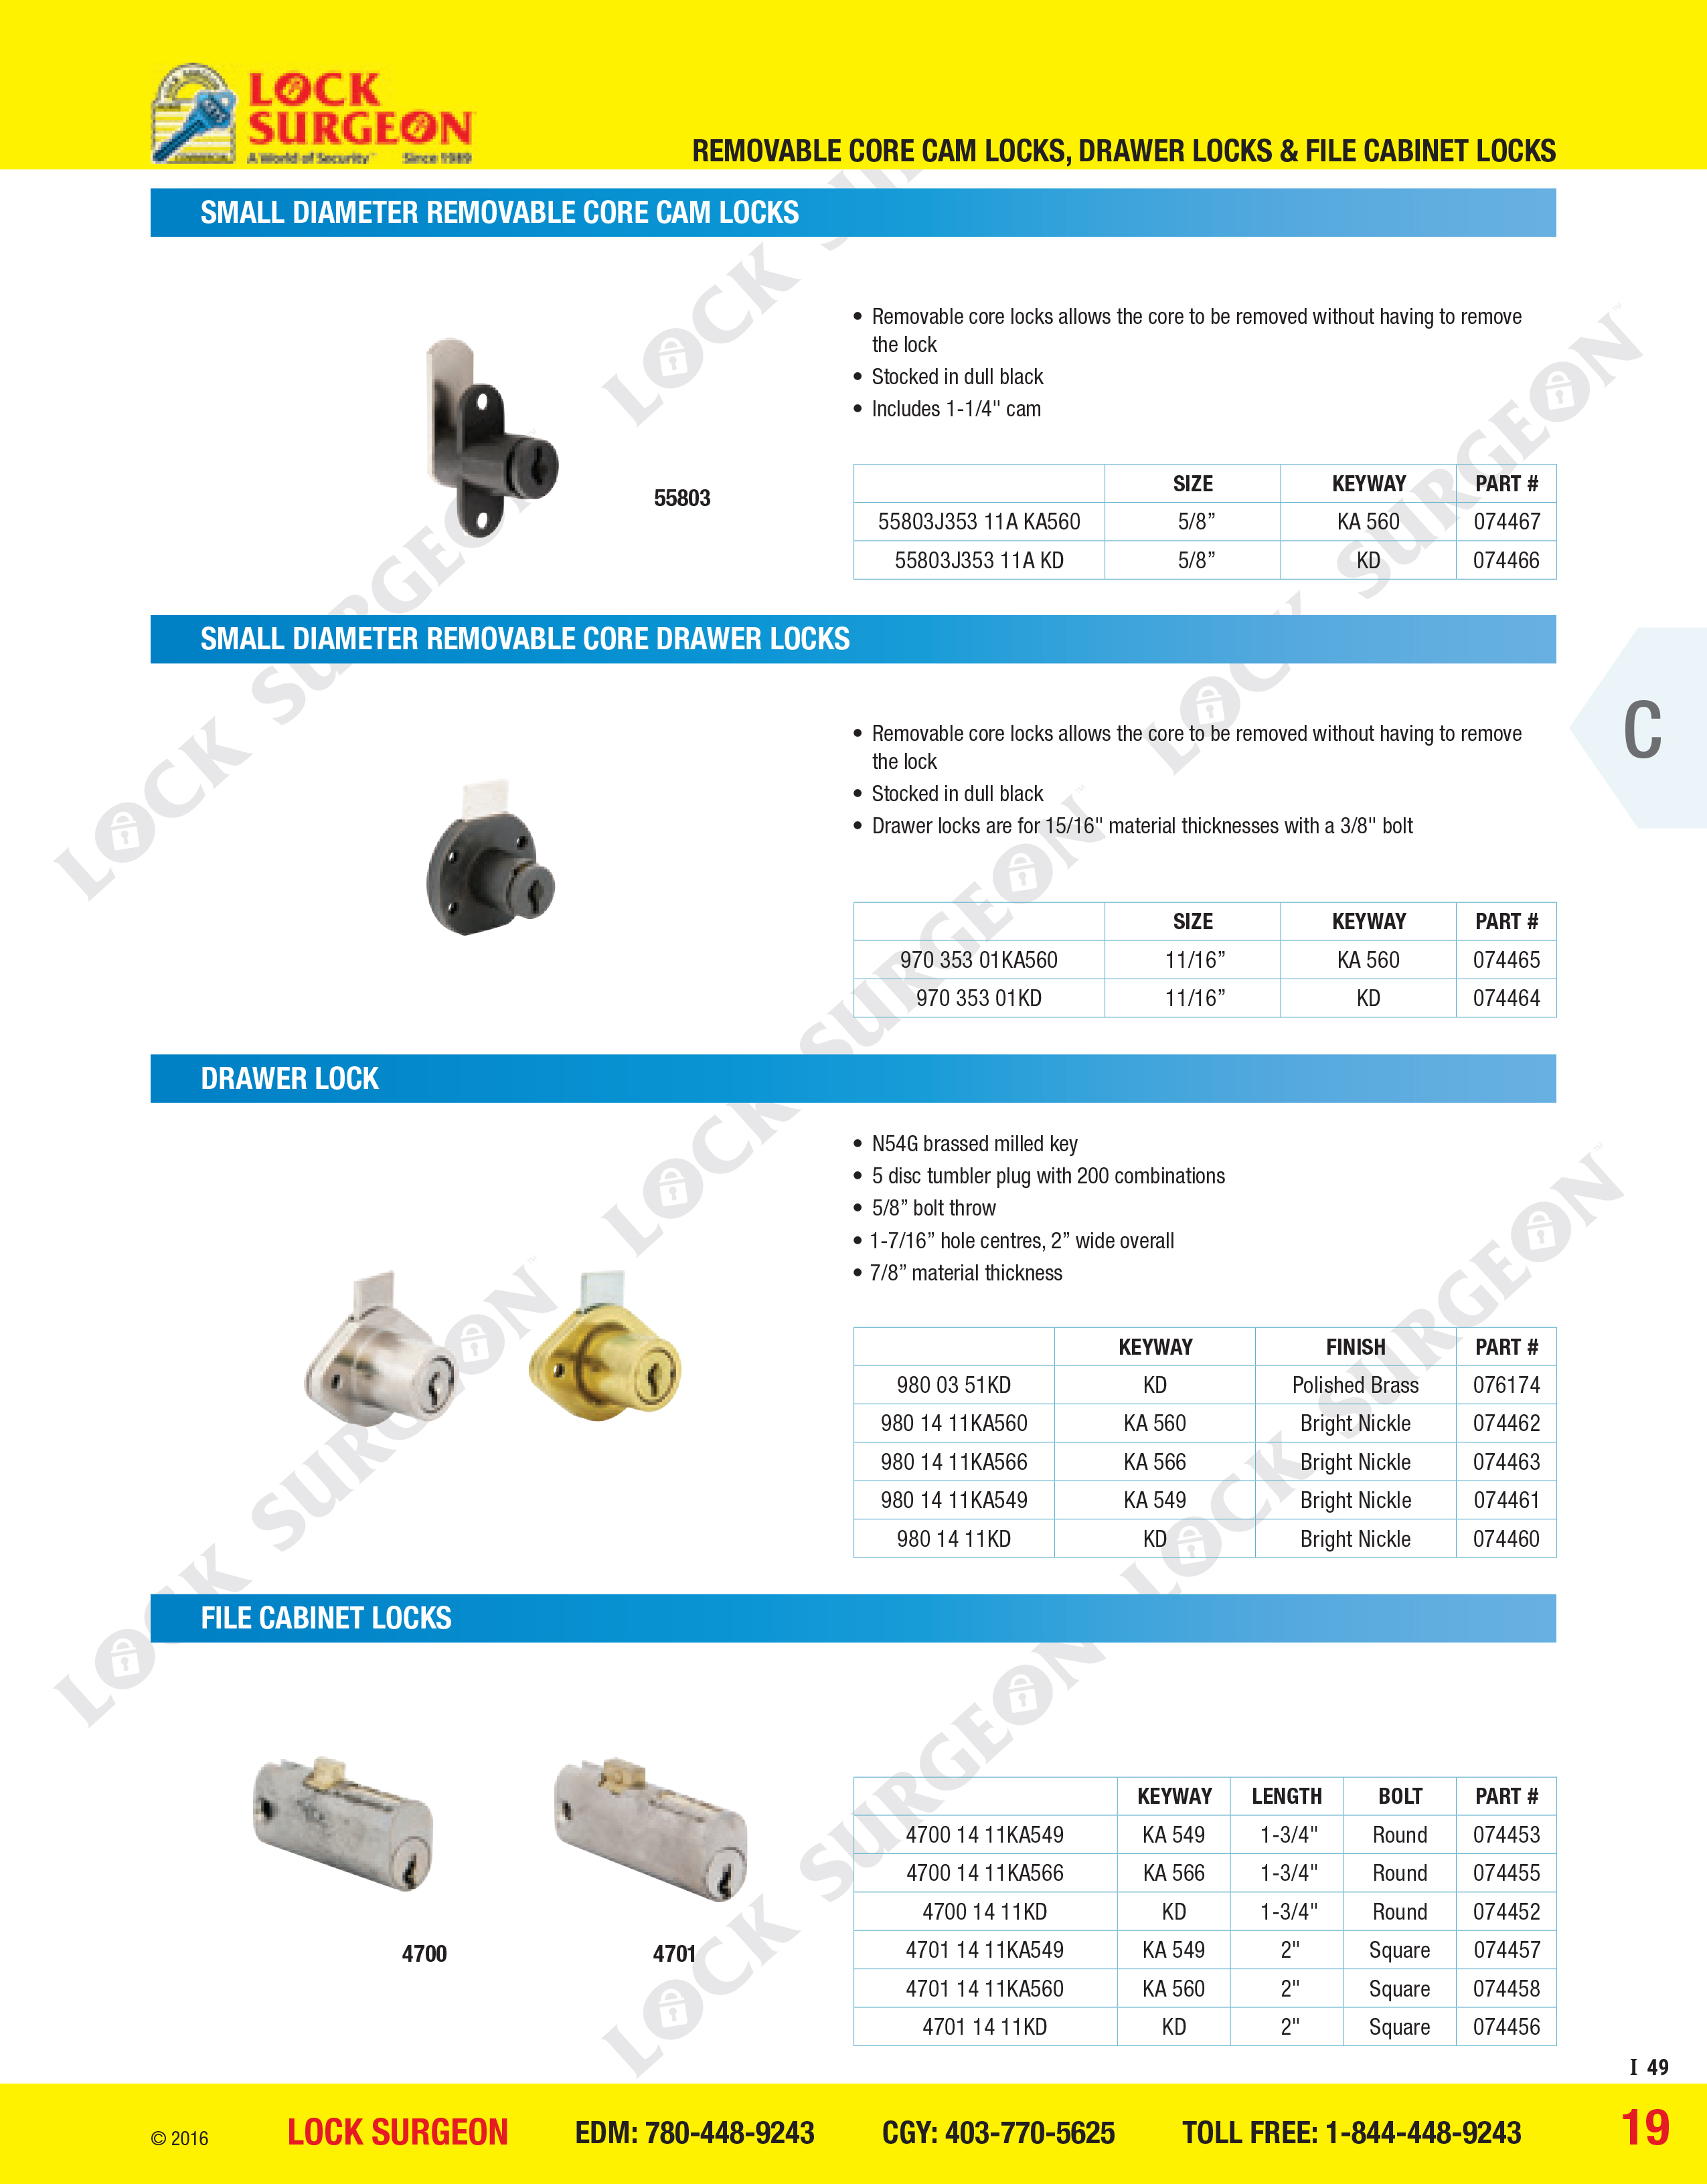 Small diameter removable core cam locks, small diameter removable core drawer locks, drawer lock and file cabinet locks